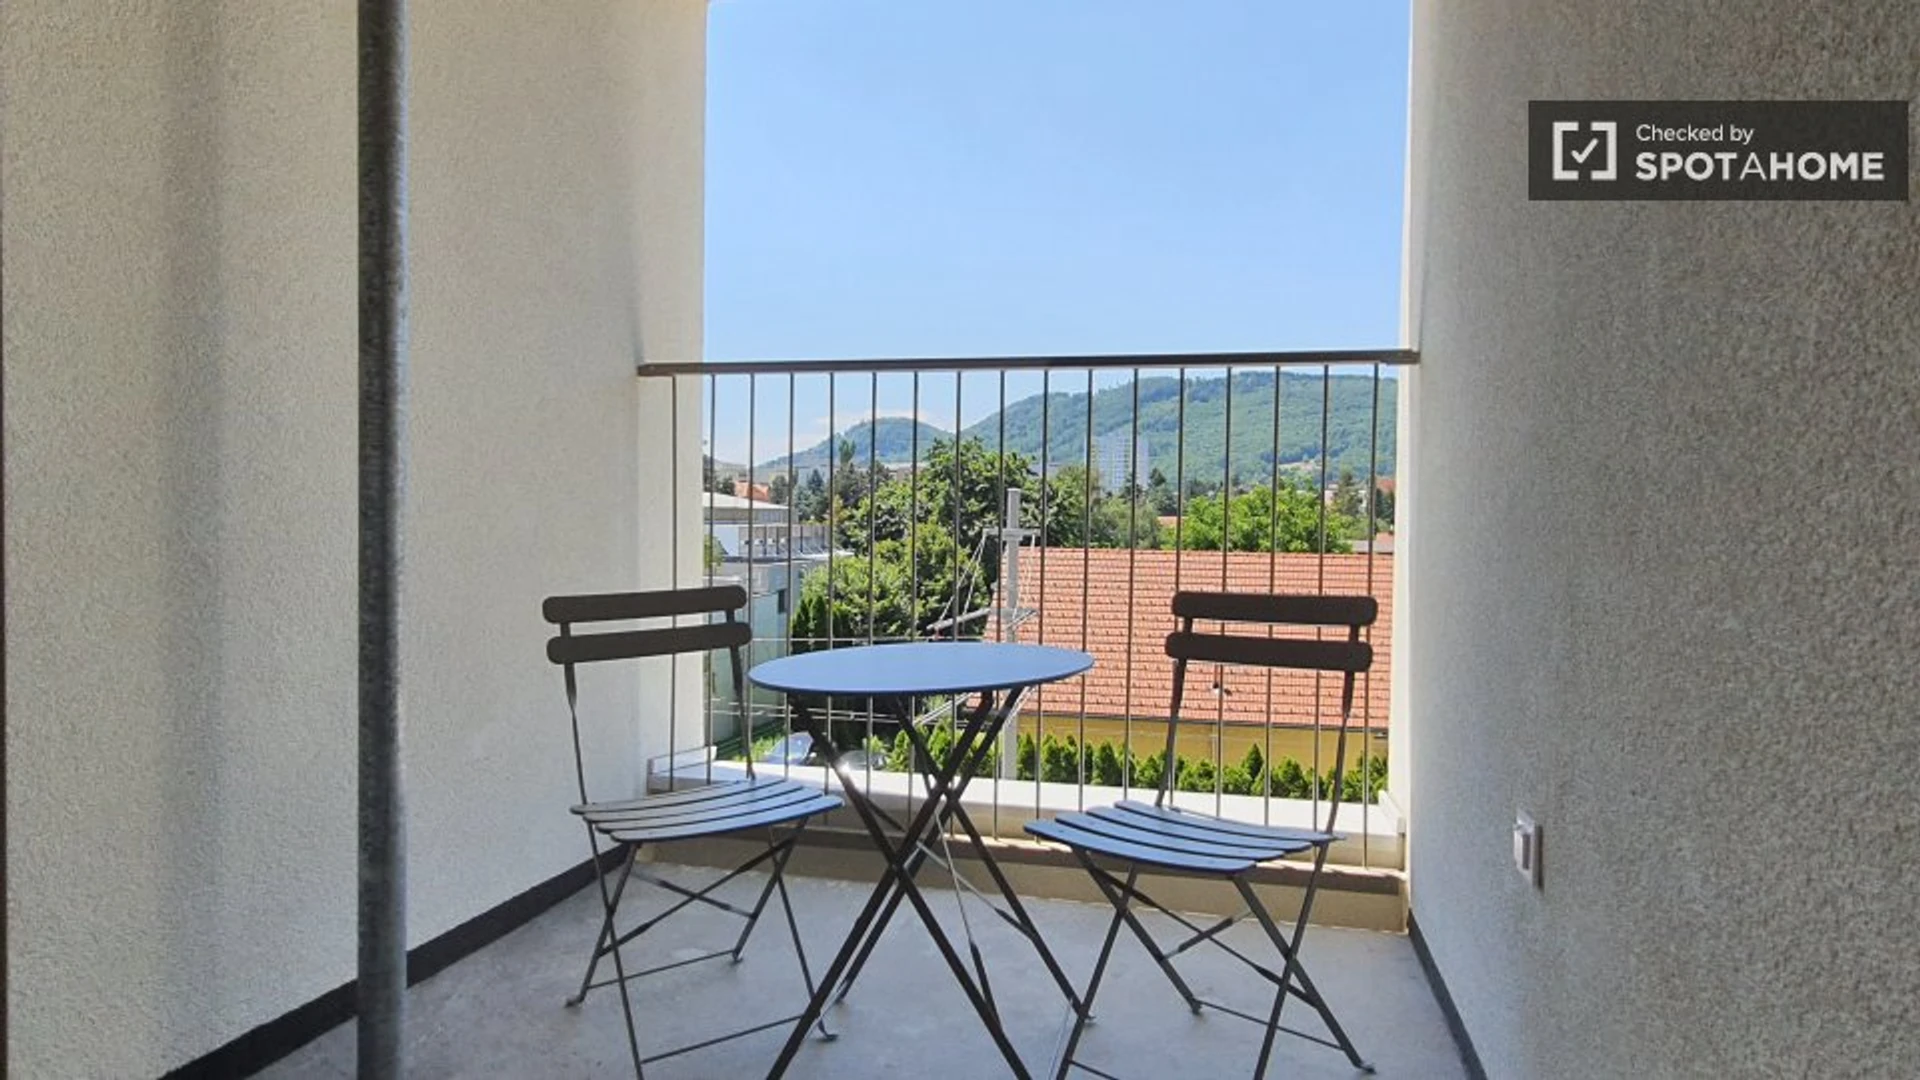 Cheap private room in Graz